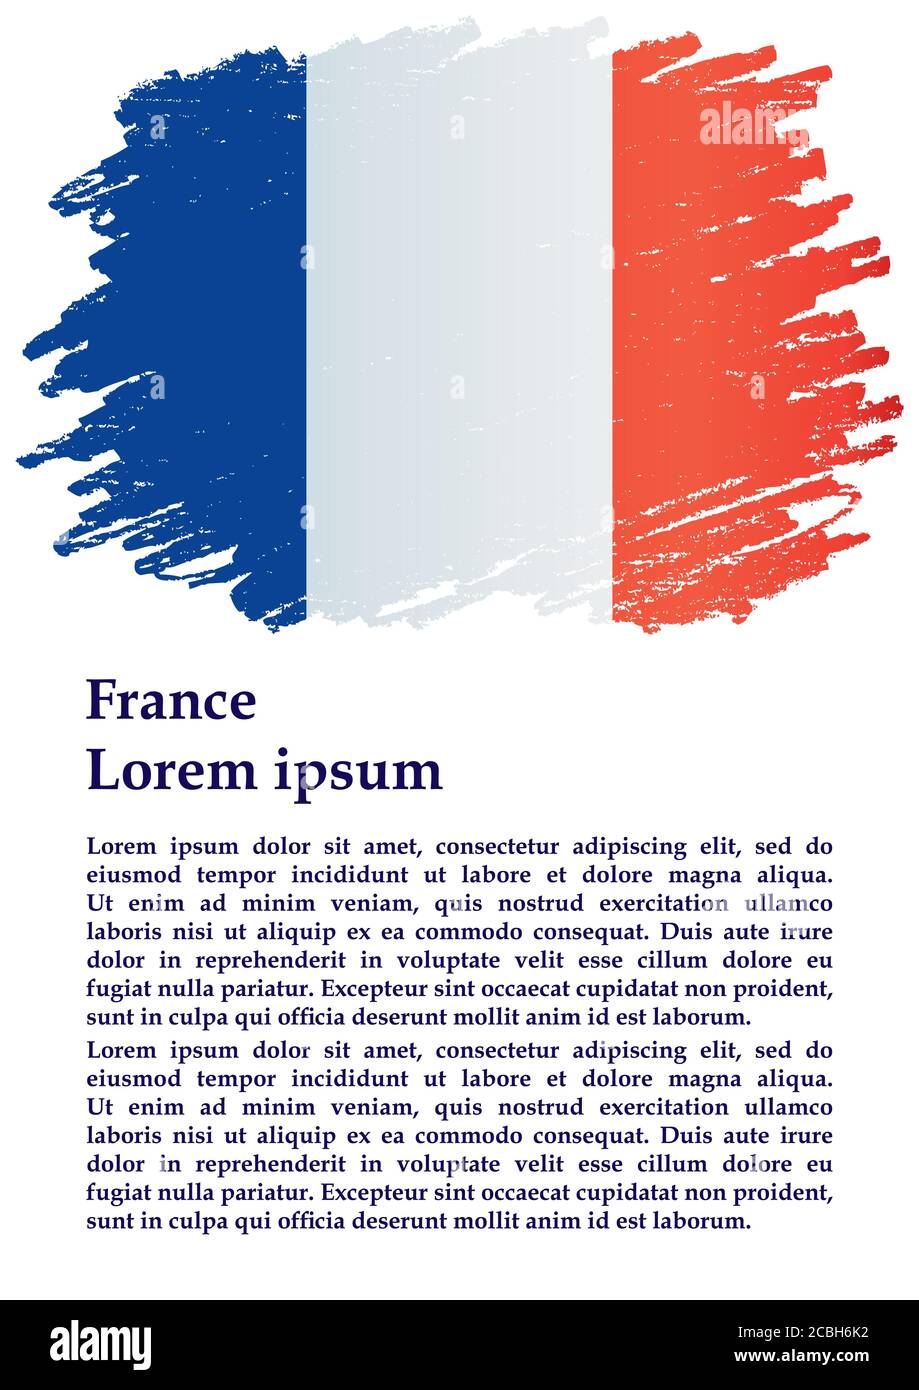 Flagge Frankreichs, Französische Republik. Vorlage für Award Design, ein offizielles Dokument mit der Flagge Frankreichs. Helle, farbenfrohe Vektorgrafik. Stock Vektor